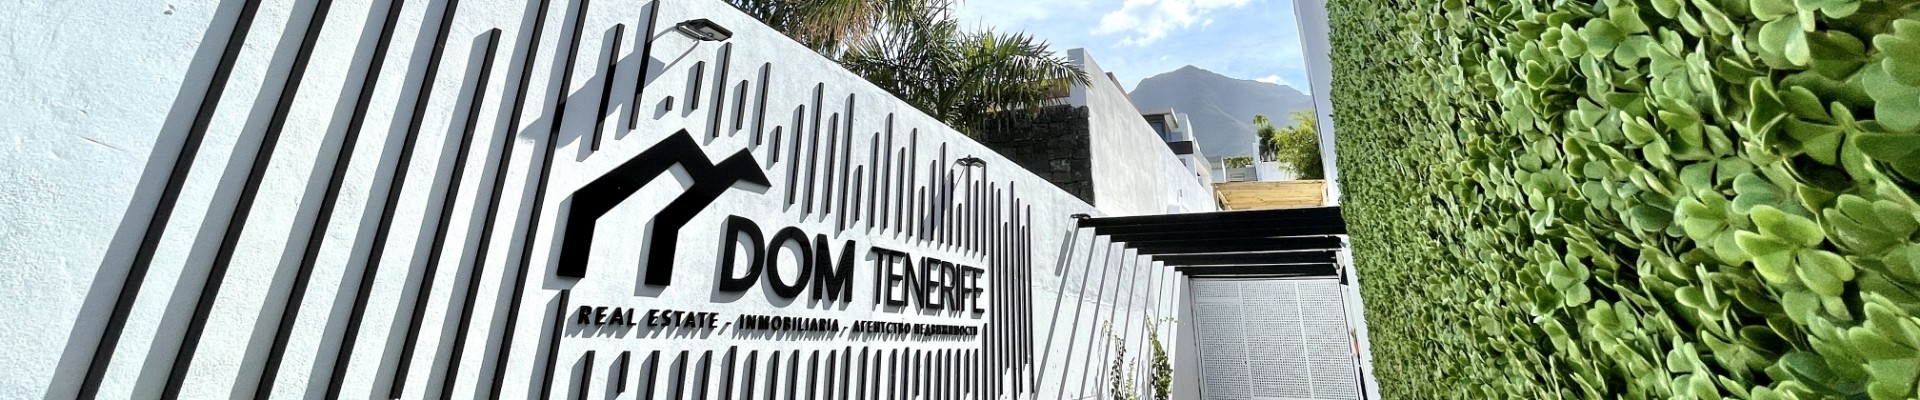 Vendez votre propriété avec DOM Tenerife Real Estate